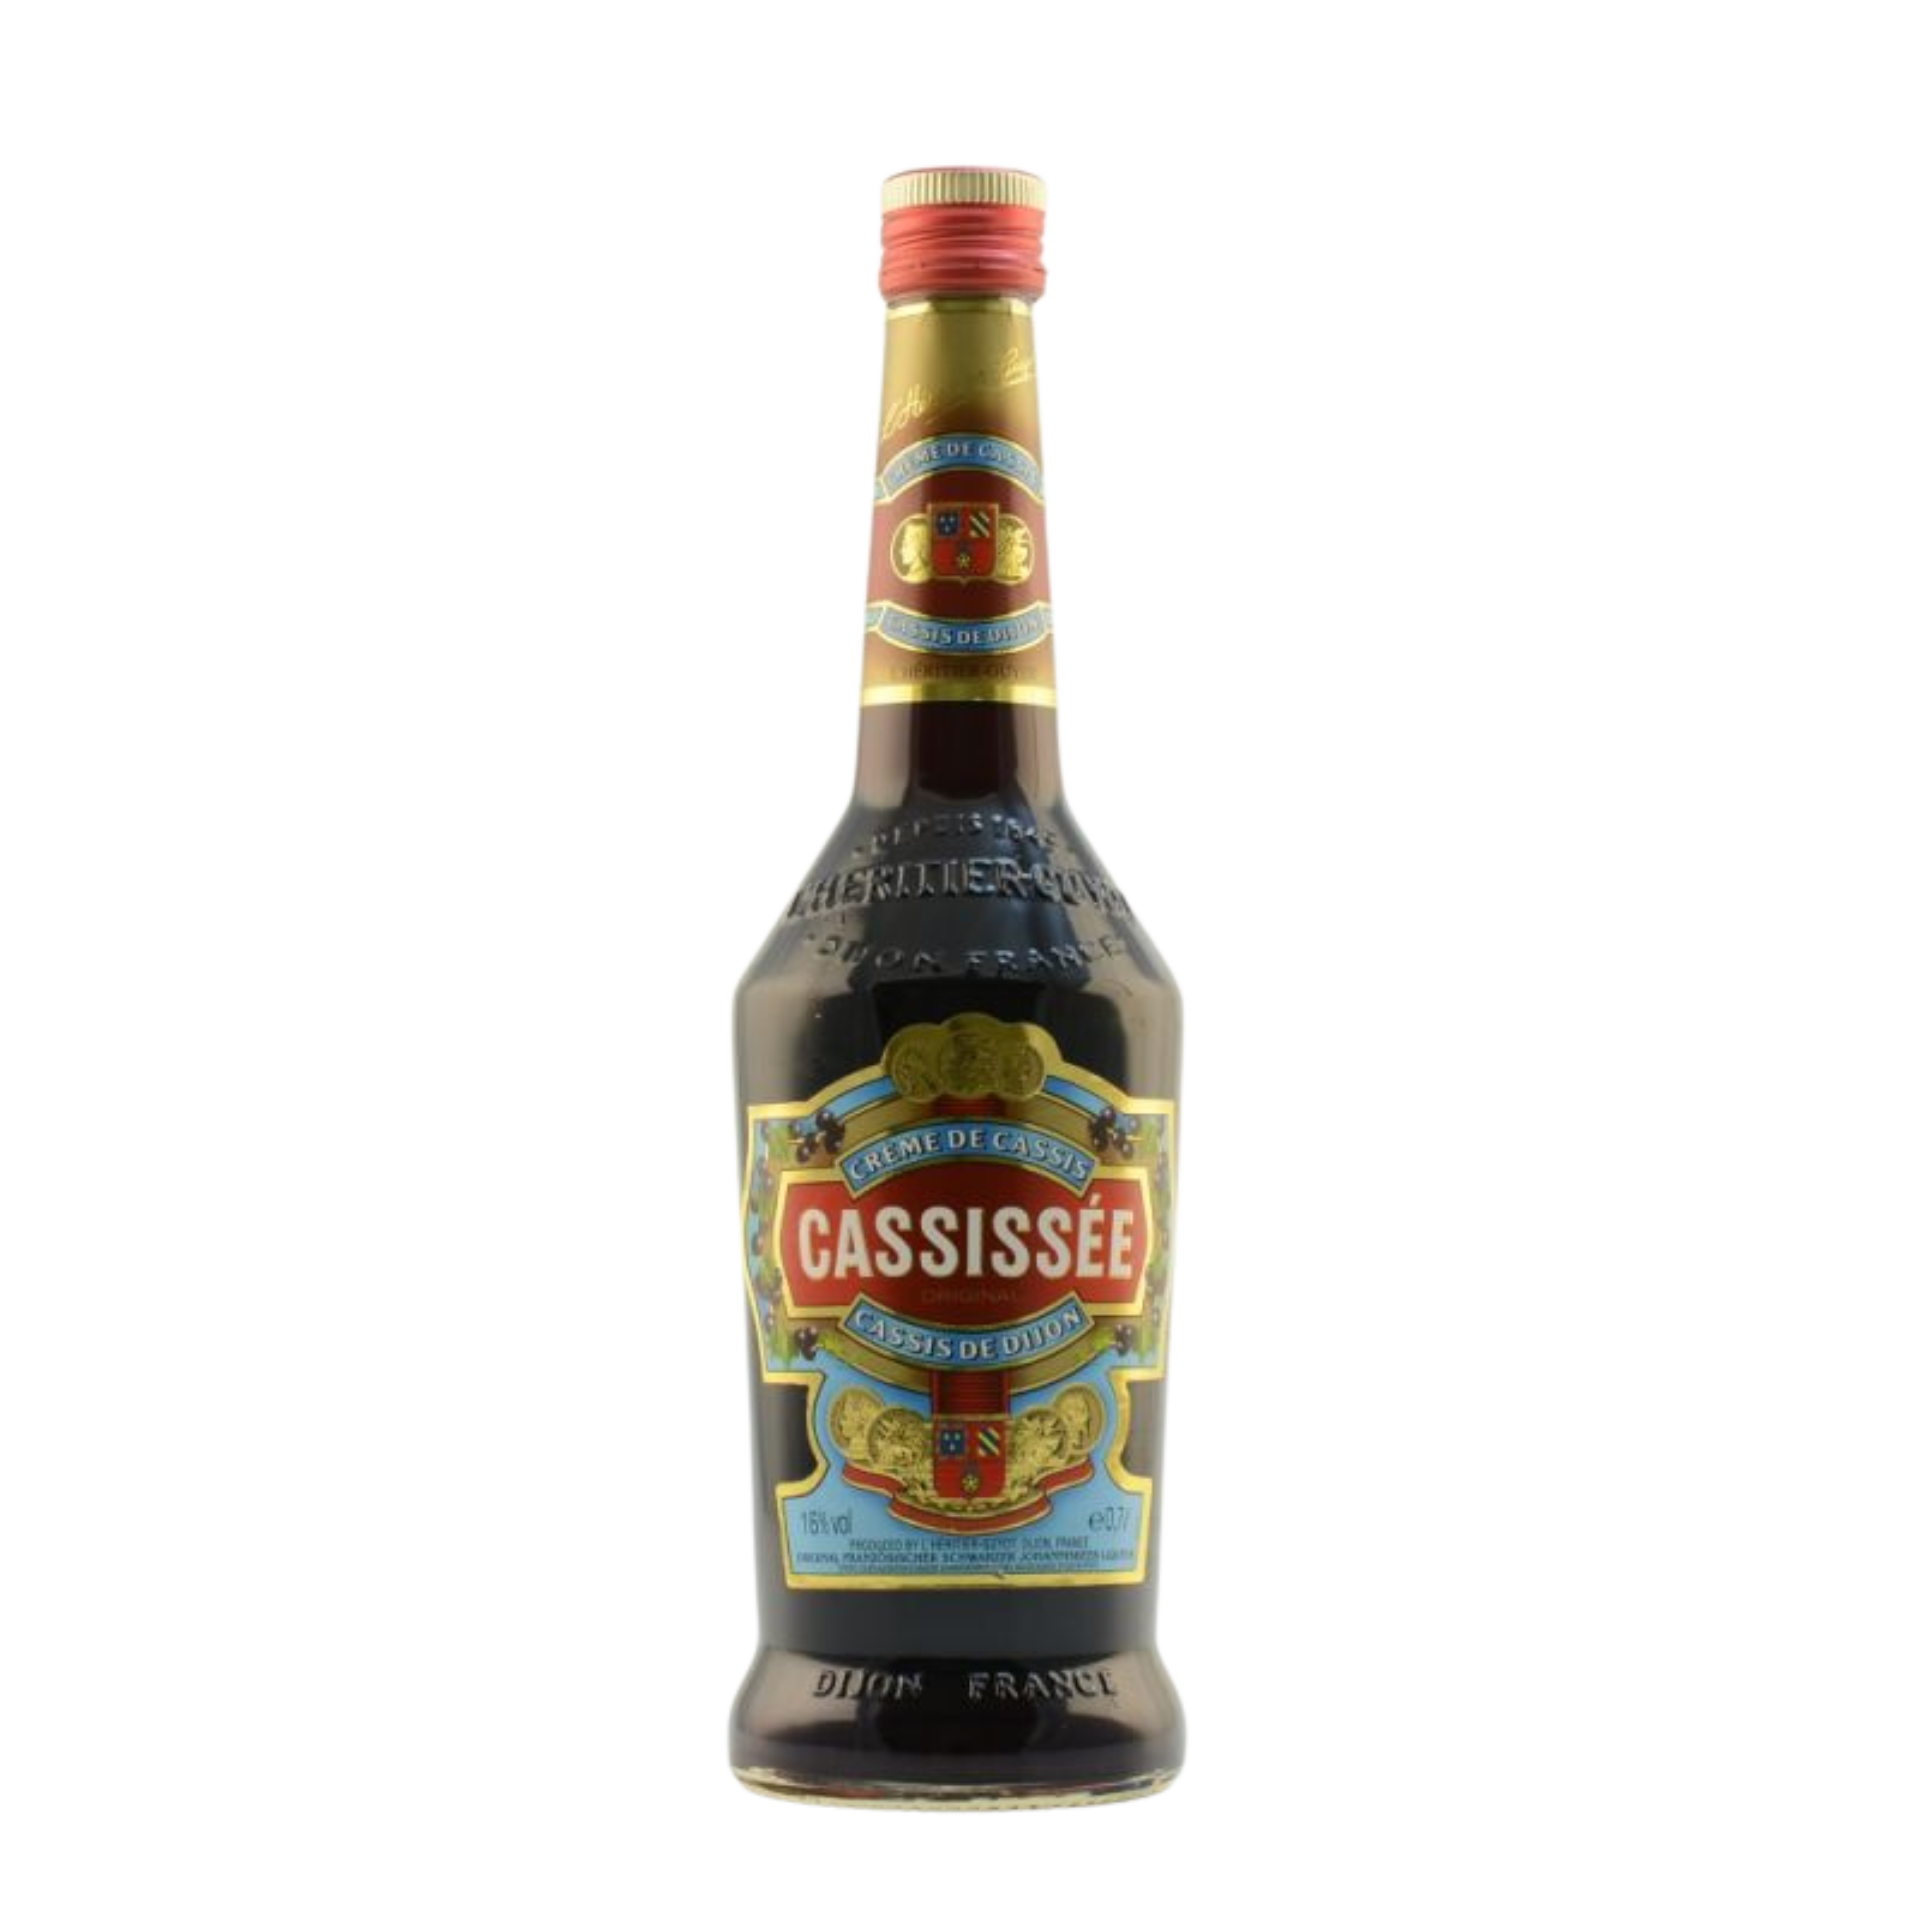 Cassissee Creme de Cassis schwarzer Johannisbeer Likör 16% 0,7l